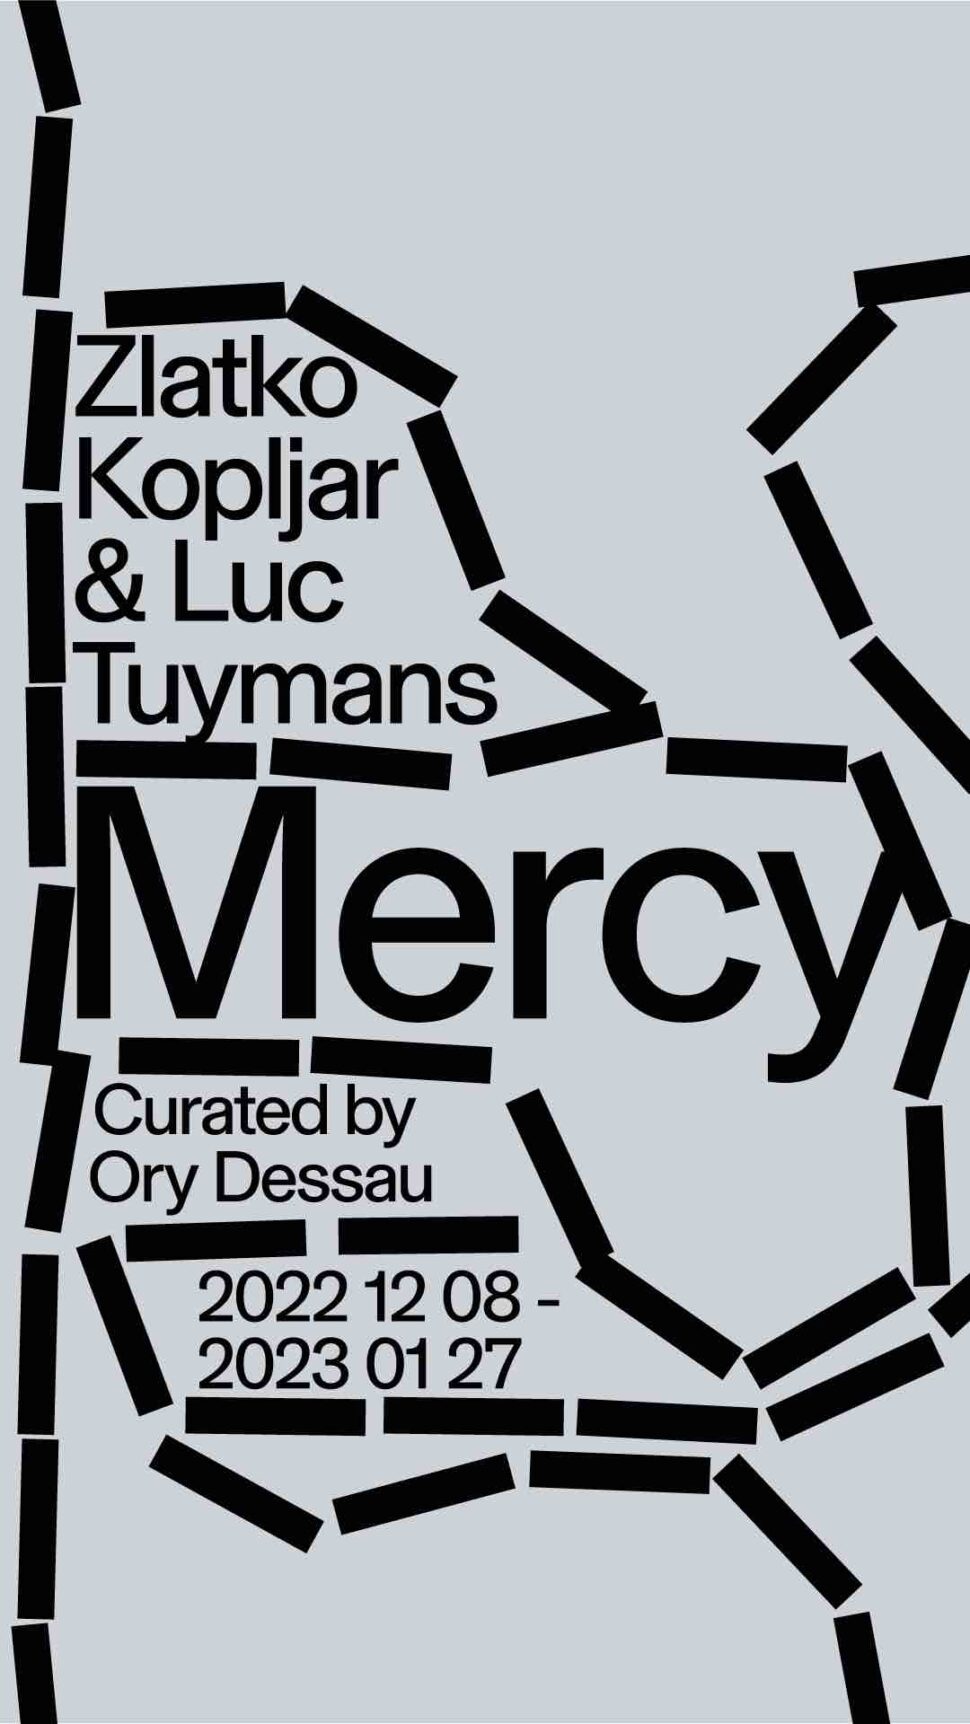 Galerija Vartai Exhibition image Mercy